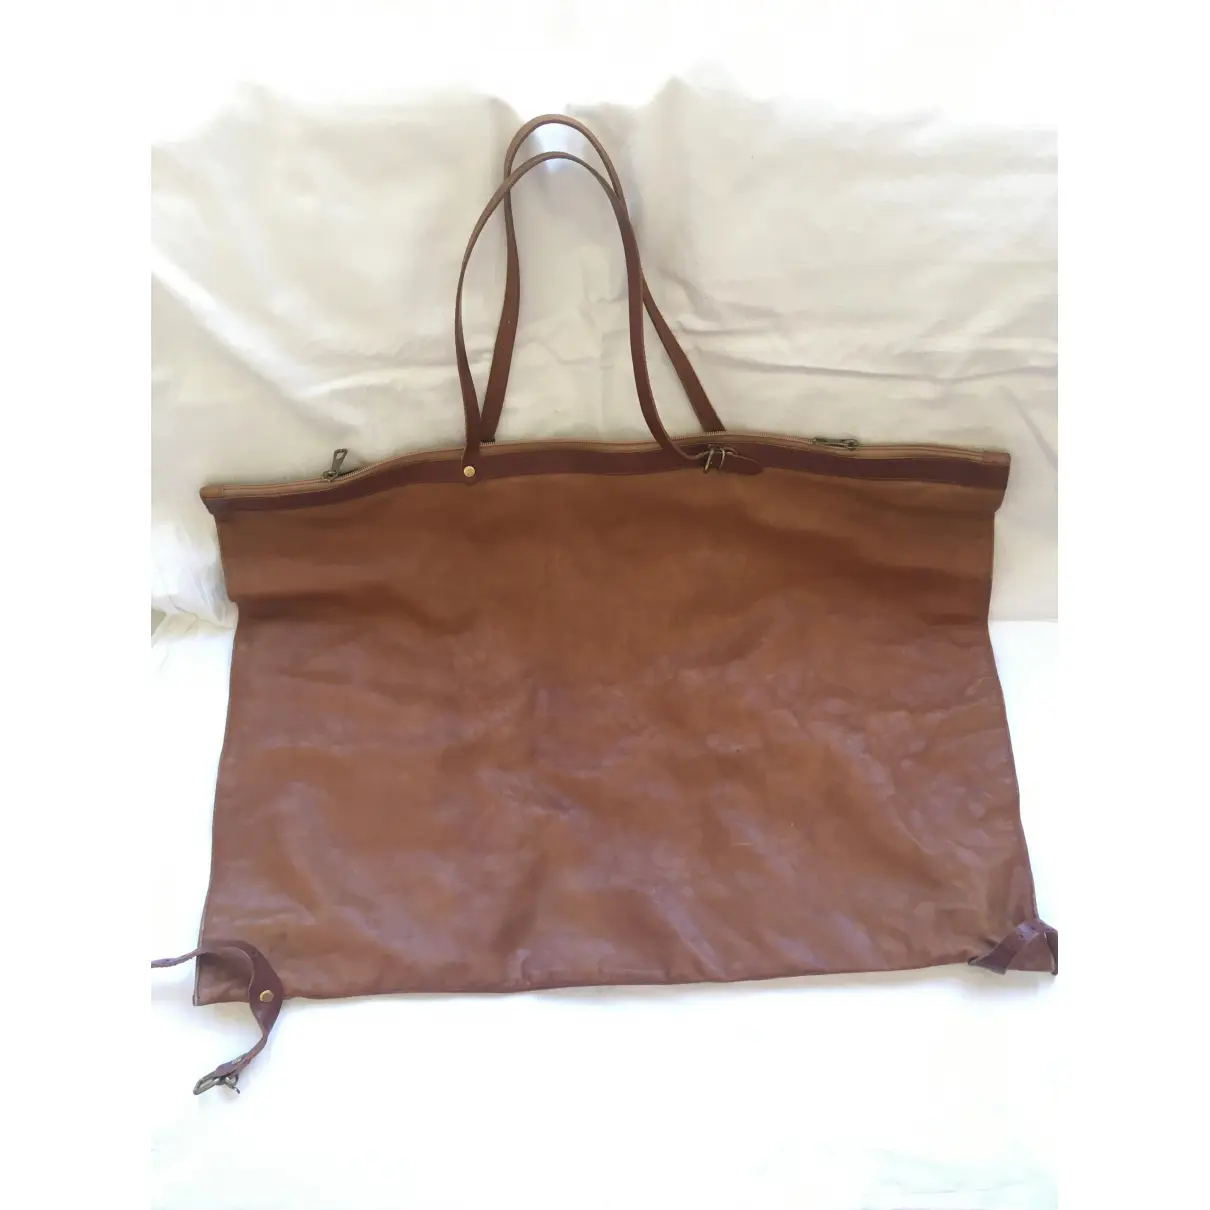 Buy Il Bisonte Leather handbag online